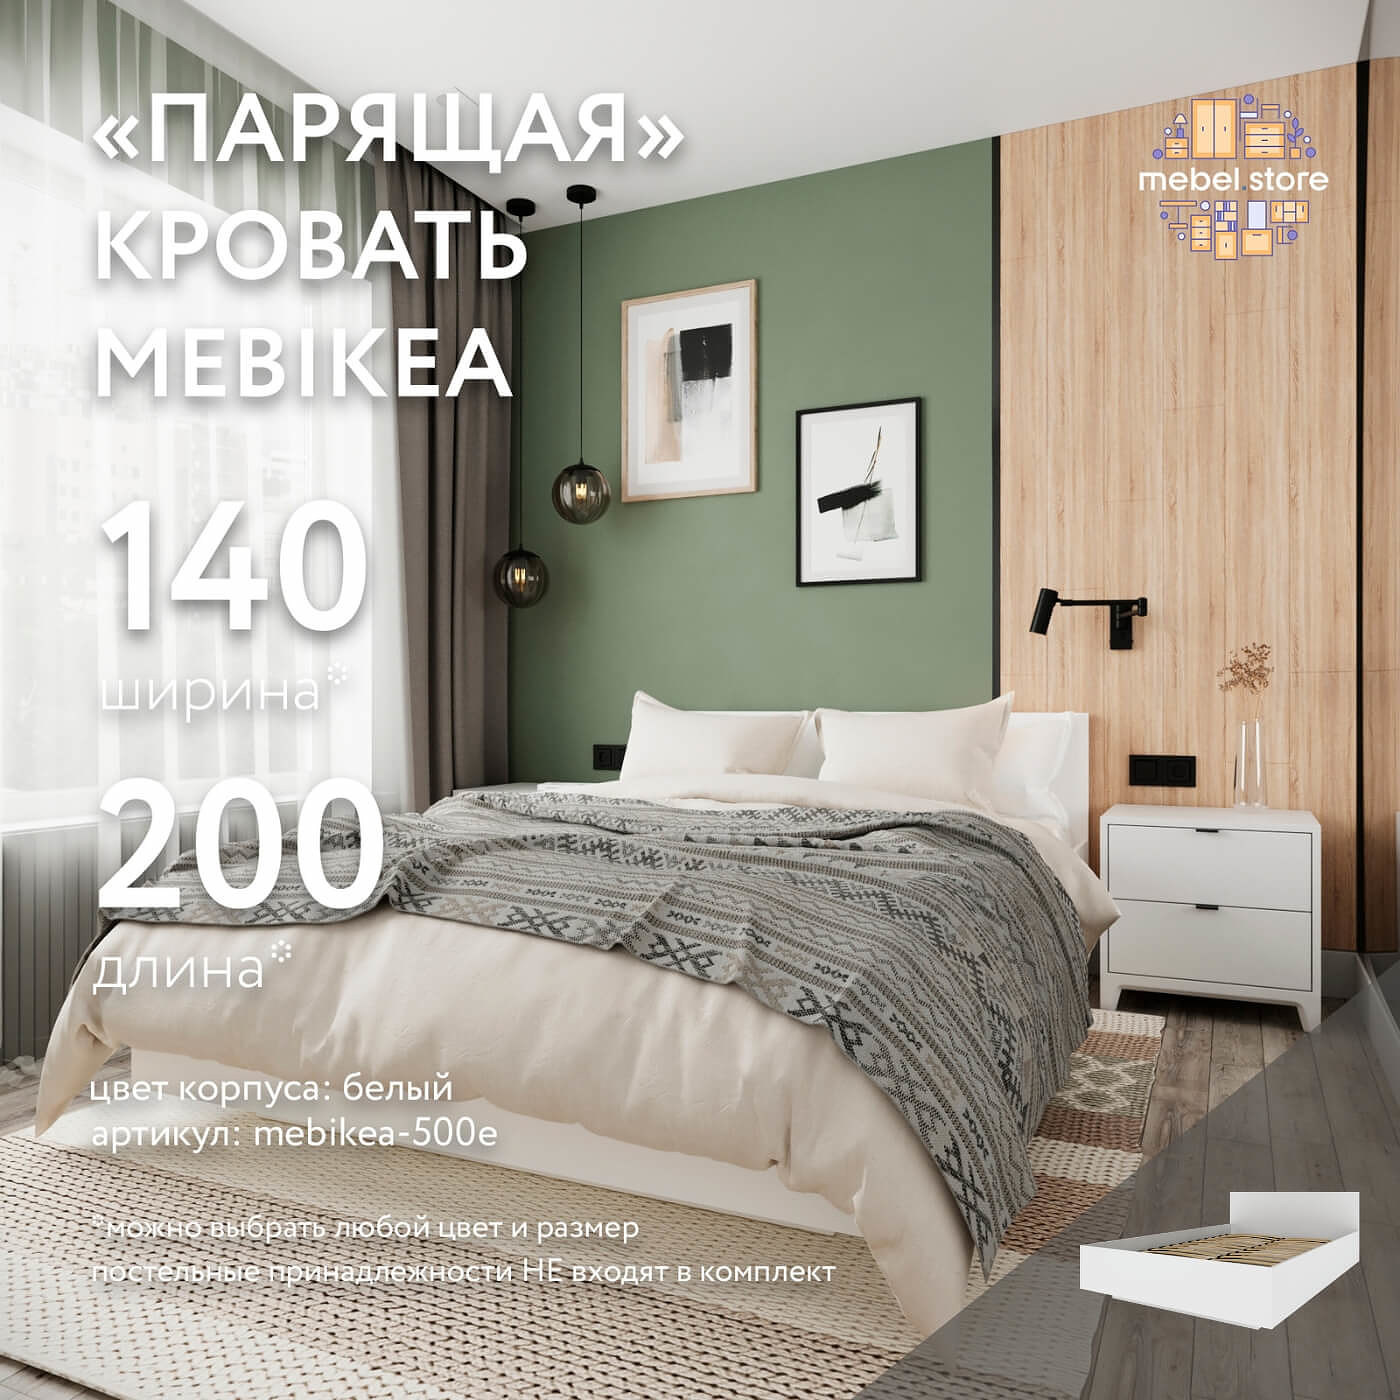 Кровать Mebikea-500e двуспальная минимализм - фото 1 large